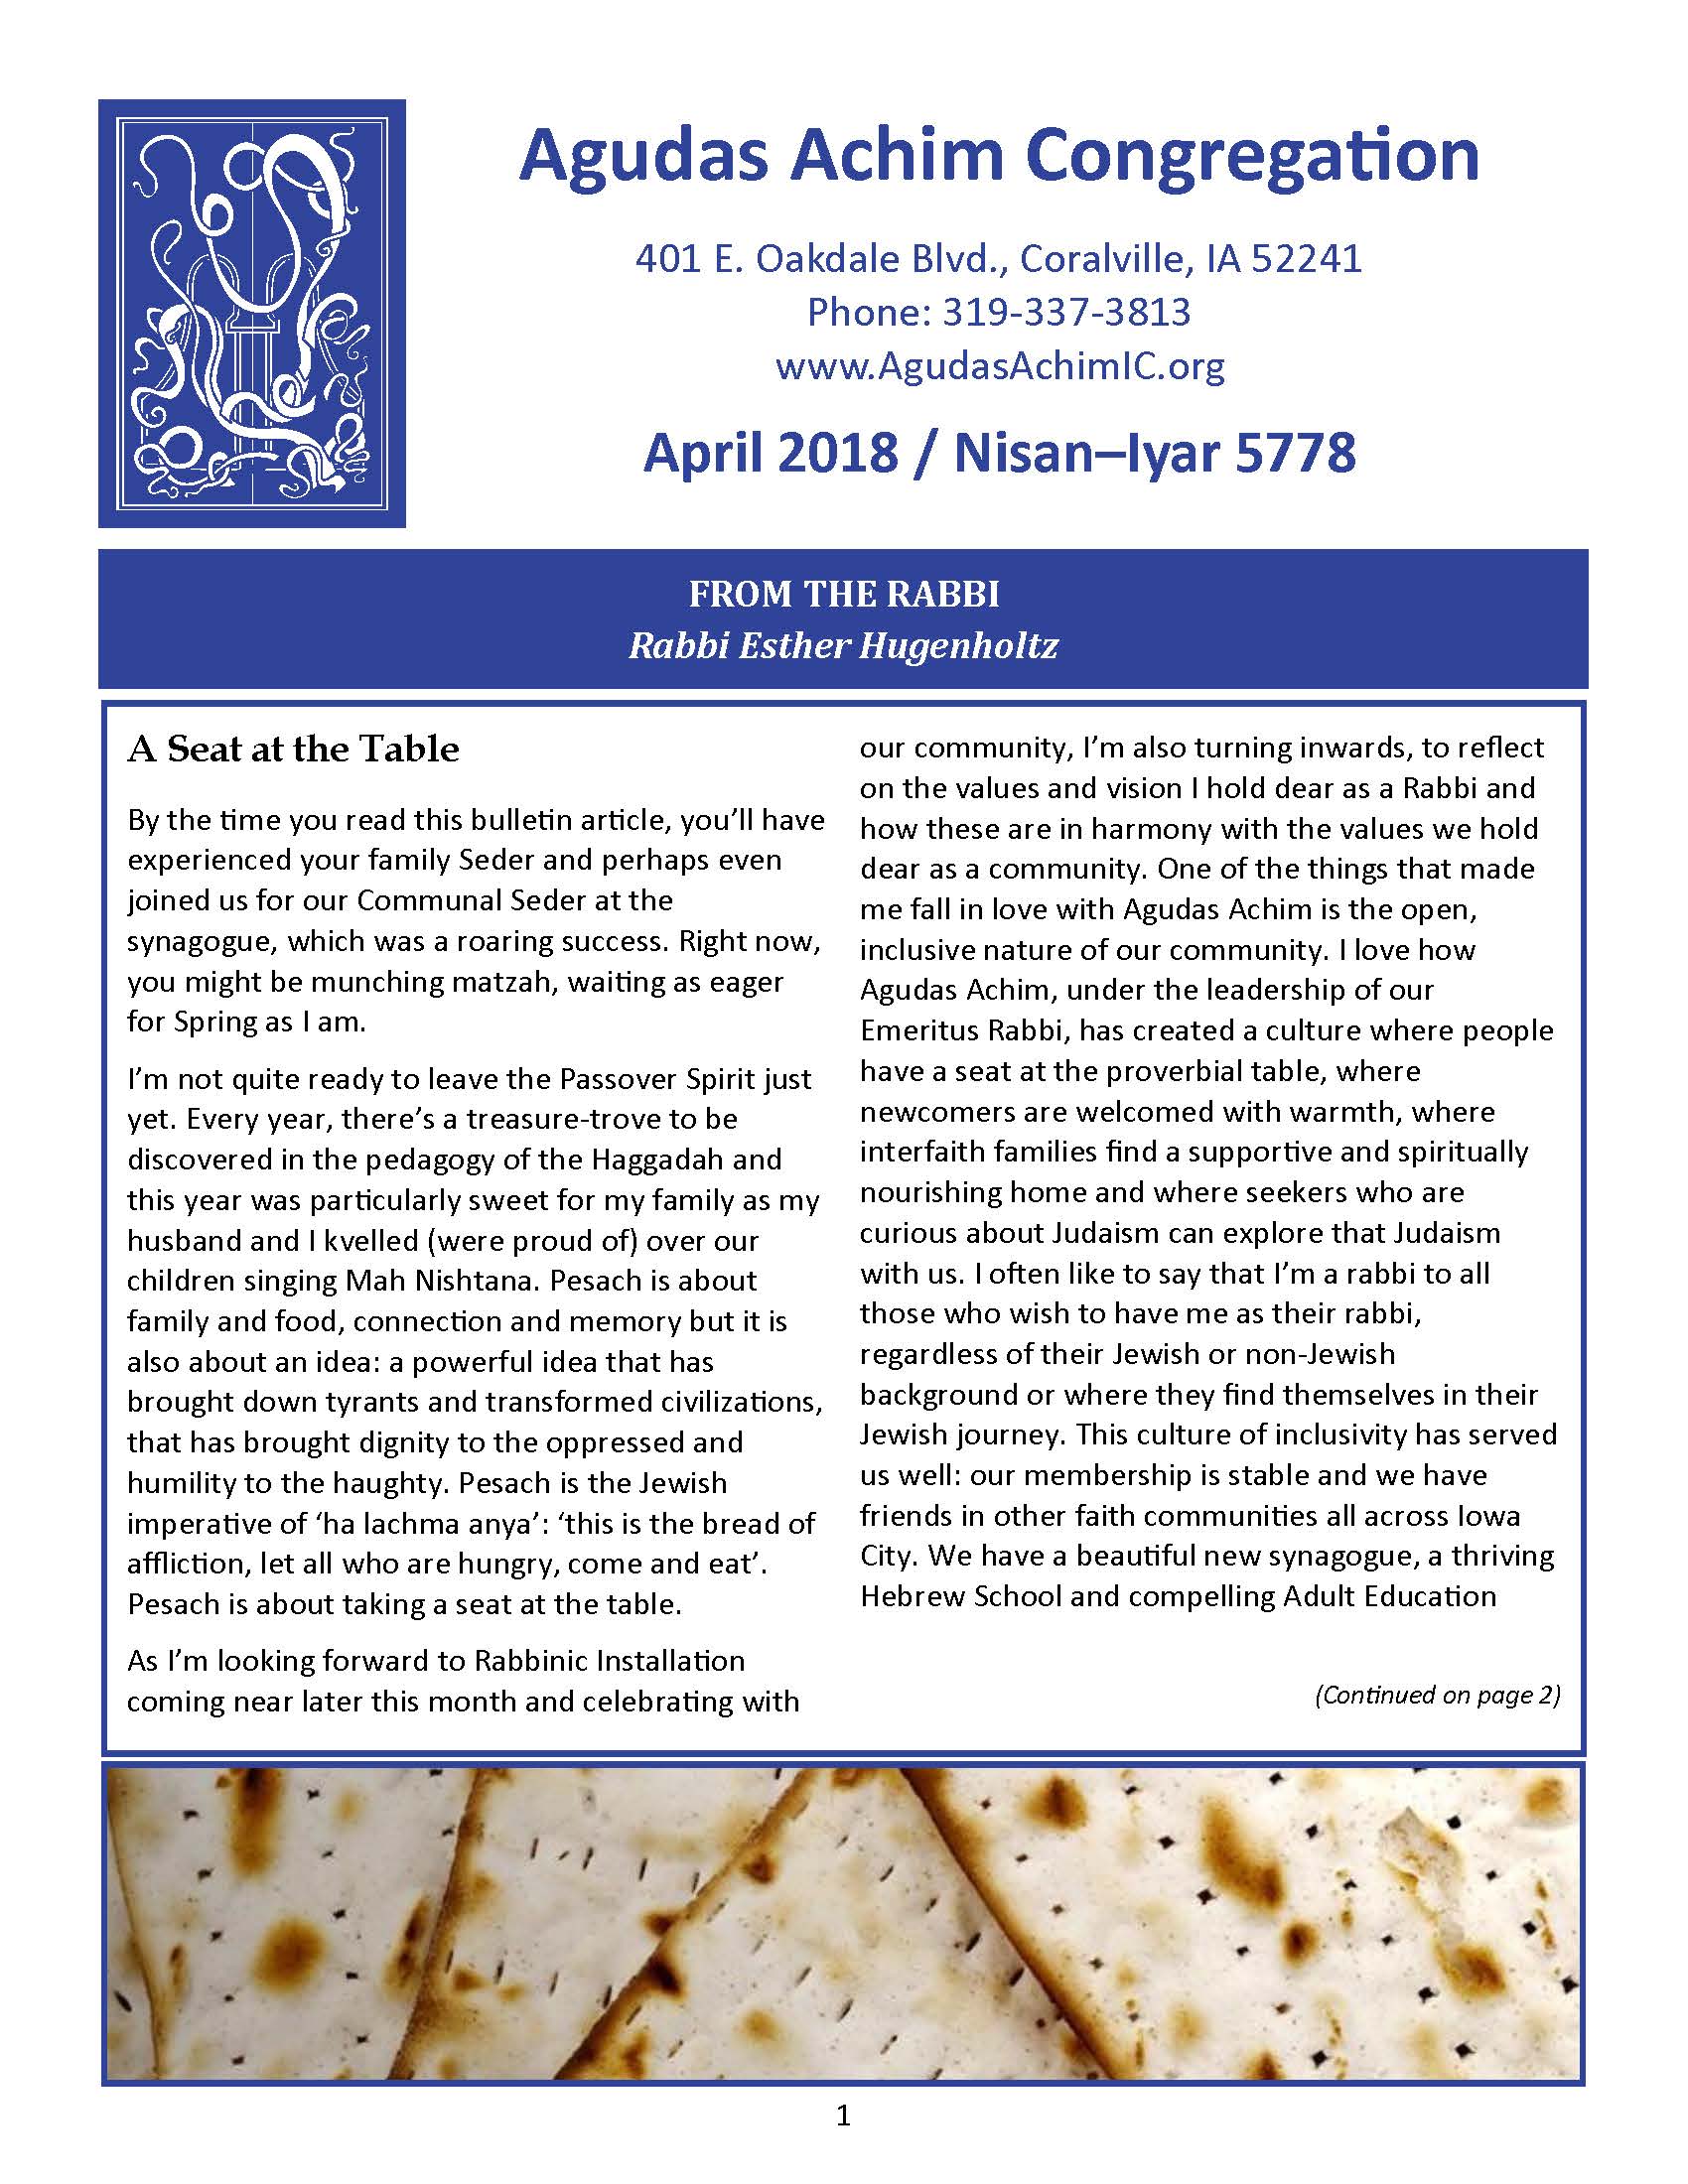 April 2018 Bulletin